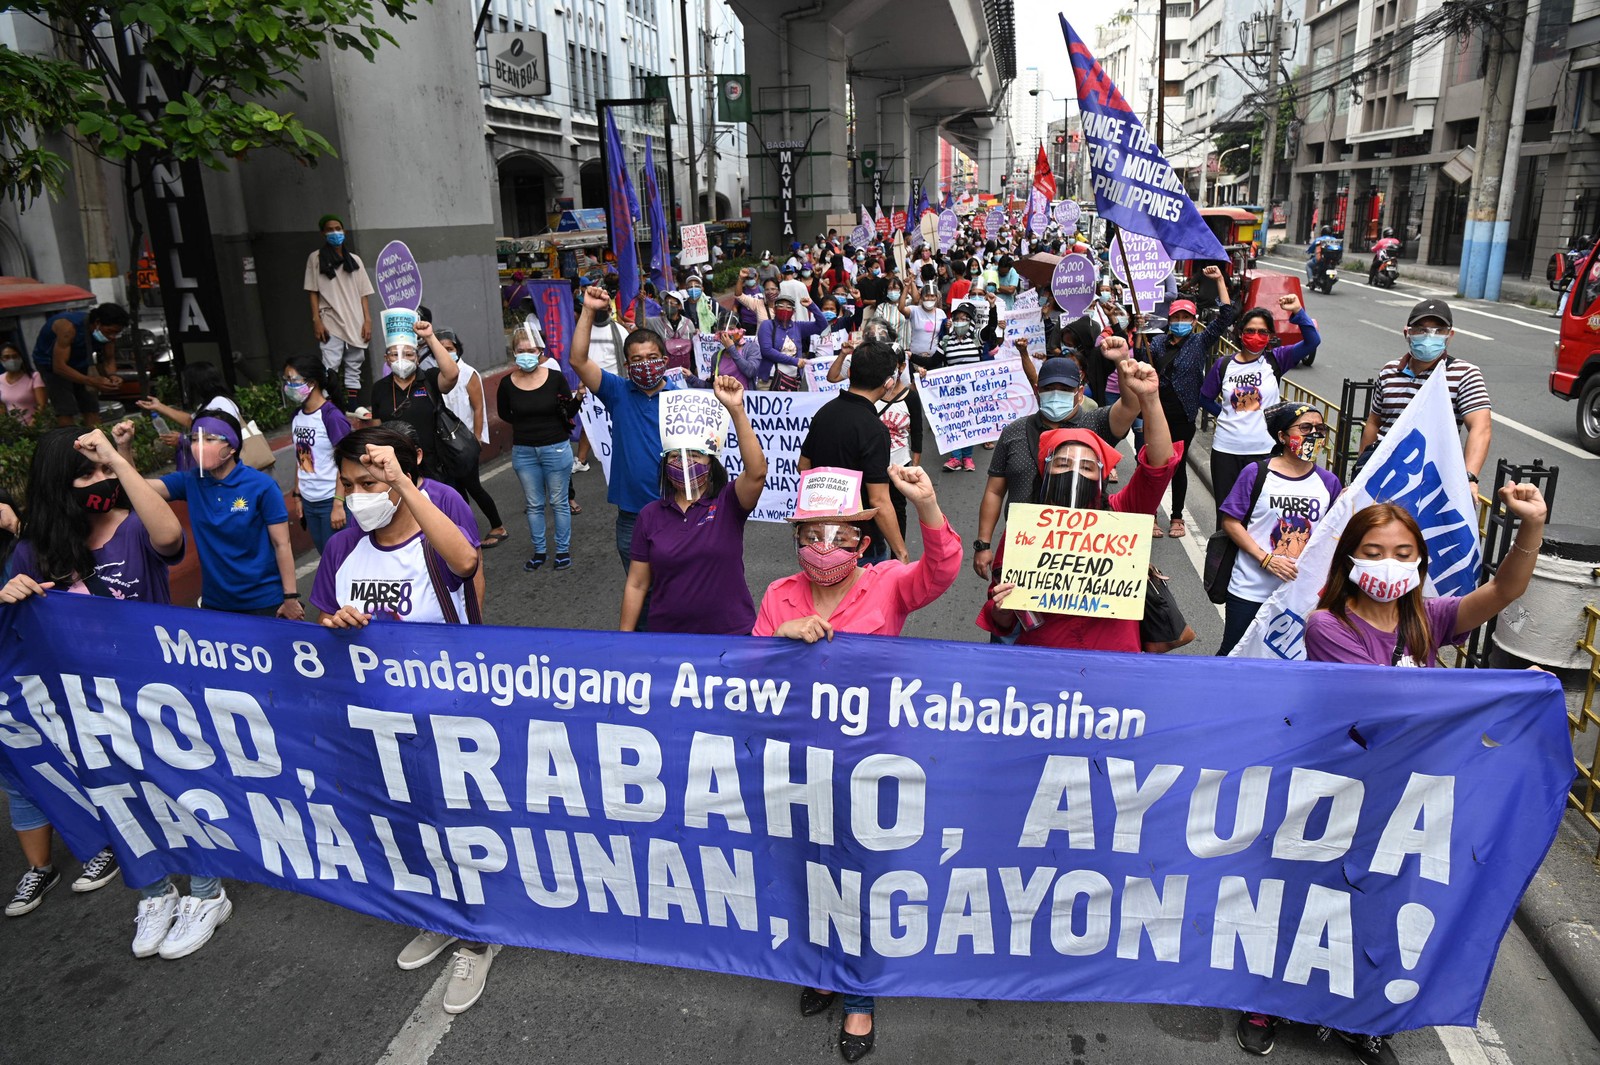 Membros do grupo de mulheres Gabriela marcham em direção ao palácio presidencial durante um protesto no Dia Internacional da Mulher em Manila, FilipinasAFP